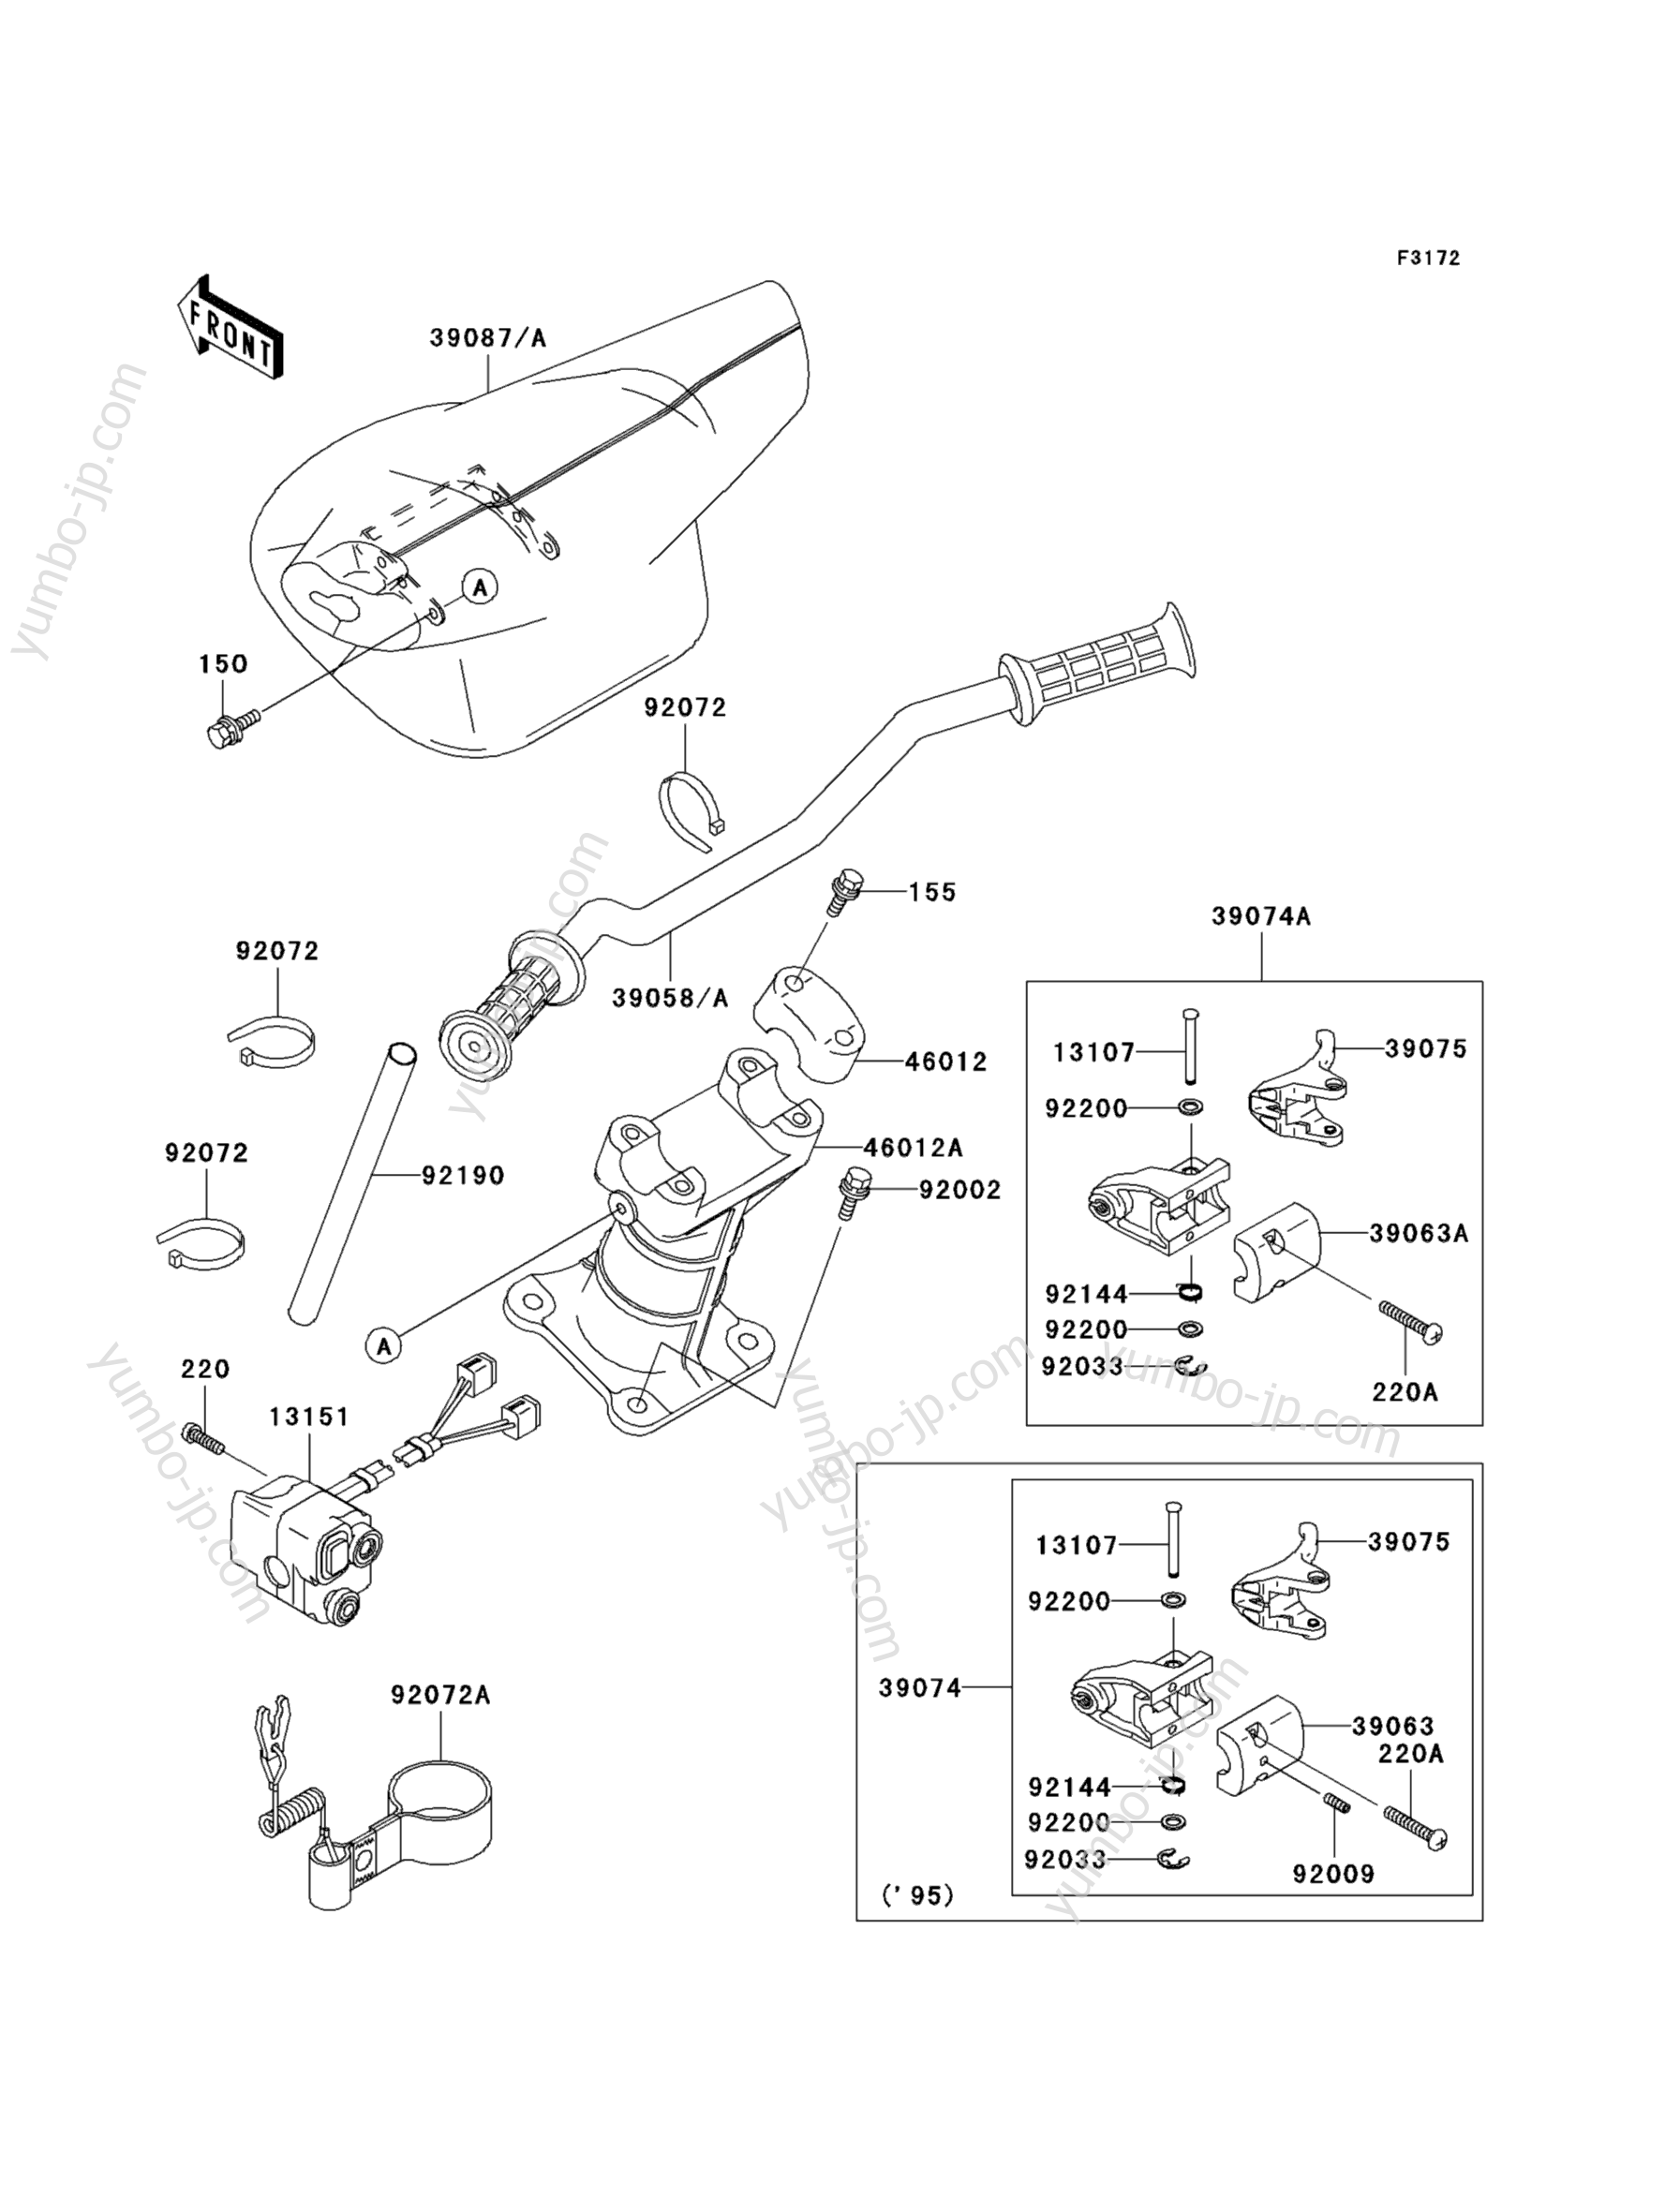 Румпель (рукоятка управления) для гидроциклов KAWASAKI JET SKI STS (JT750-B1) 1995 г.